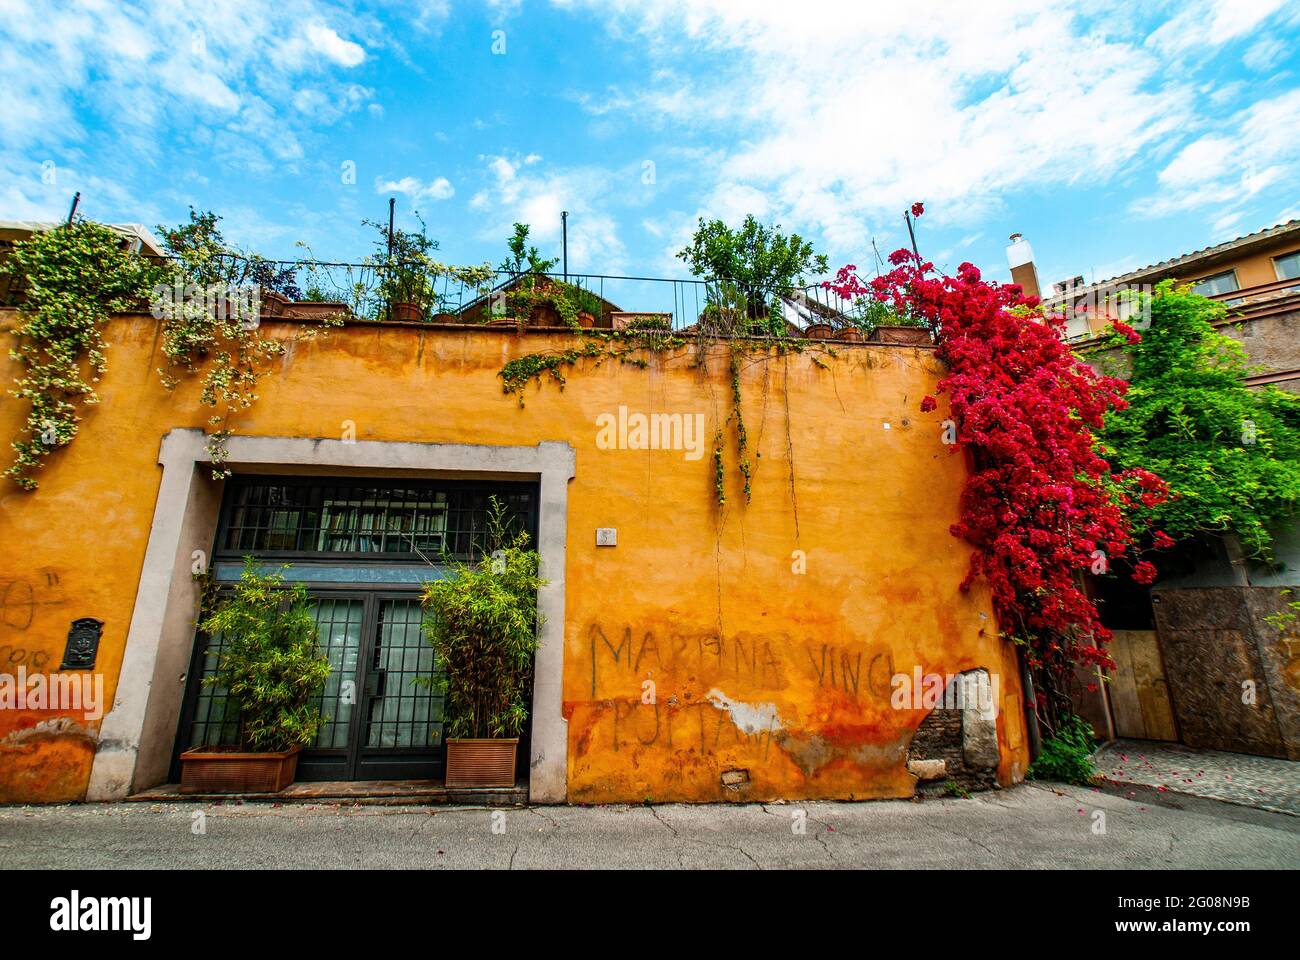 Typisches Restaurant in gemütlichen alten Straßen in Trastevere im Mai 2021, Rom, Italien. Trastevere Viertel von Rom, am Westufer des Tibers, archite Stockfoto